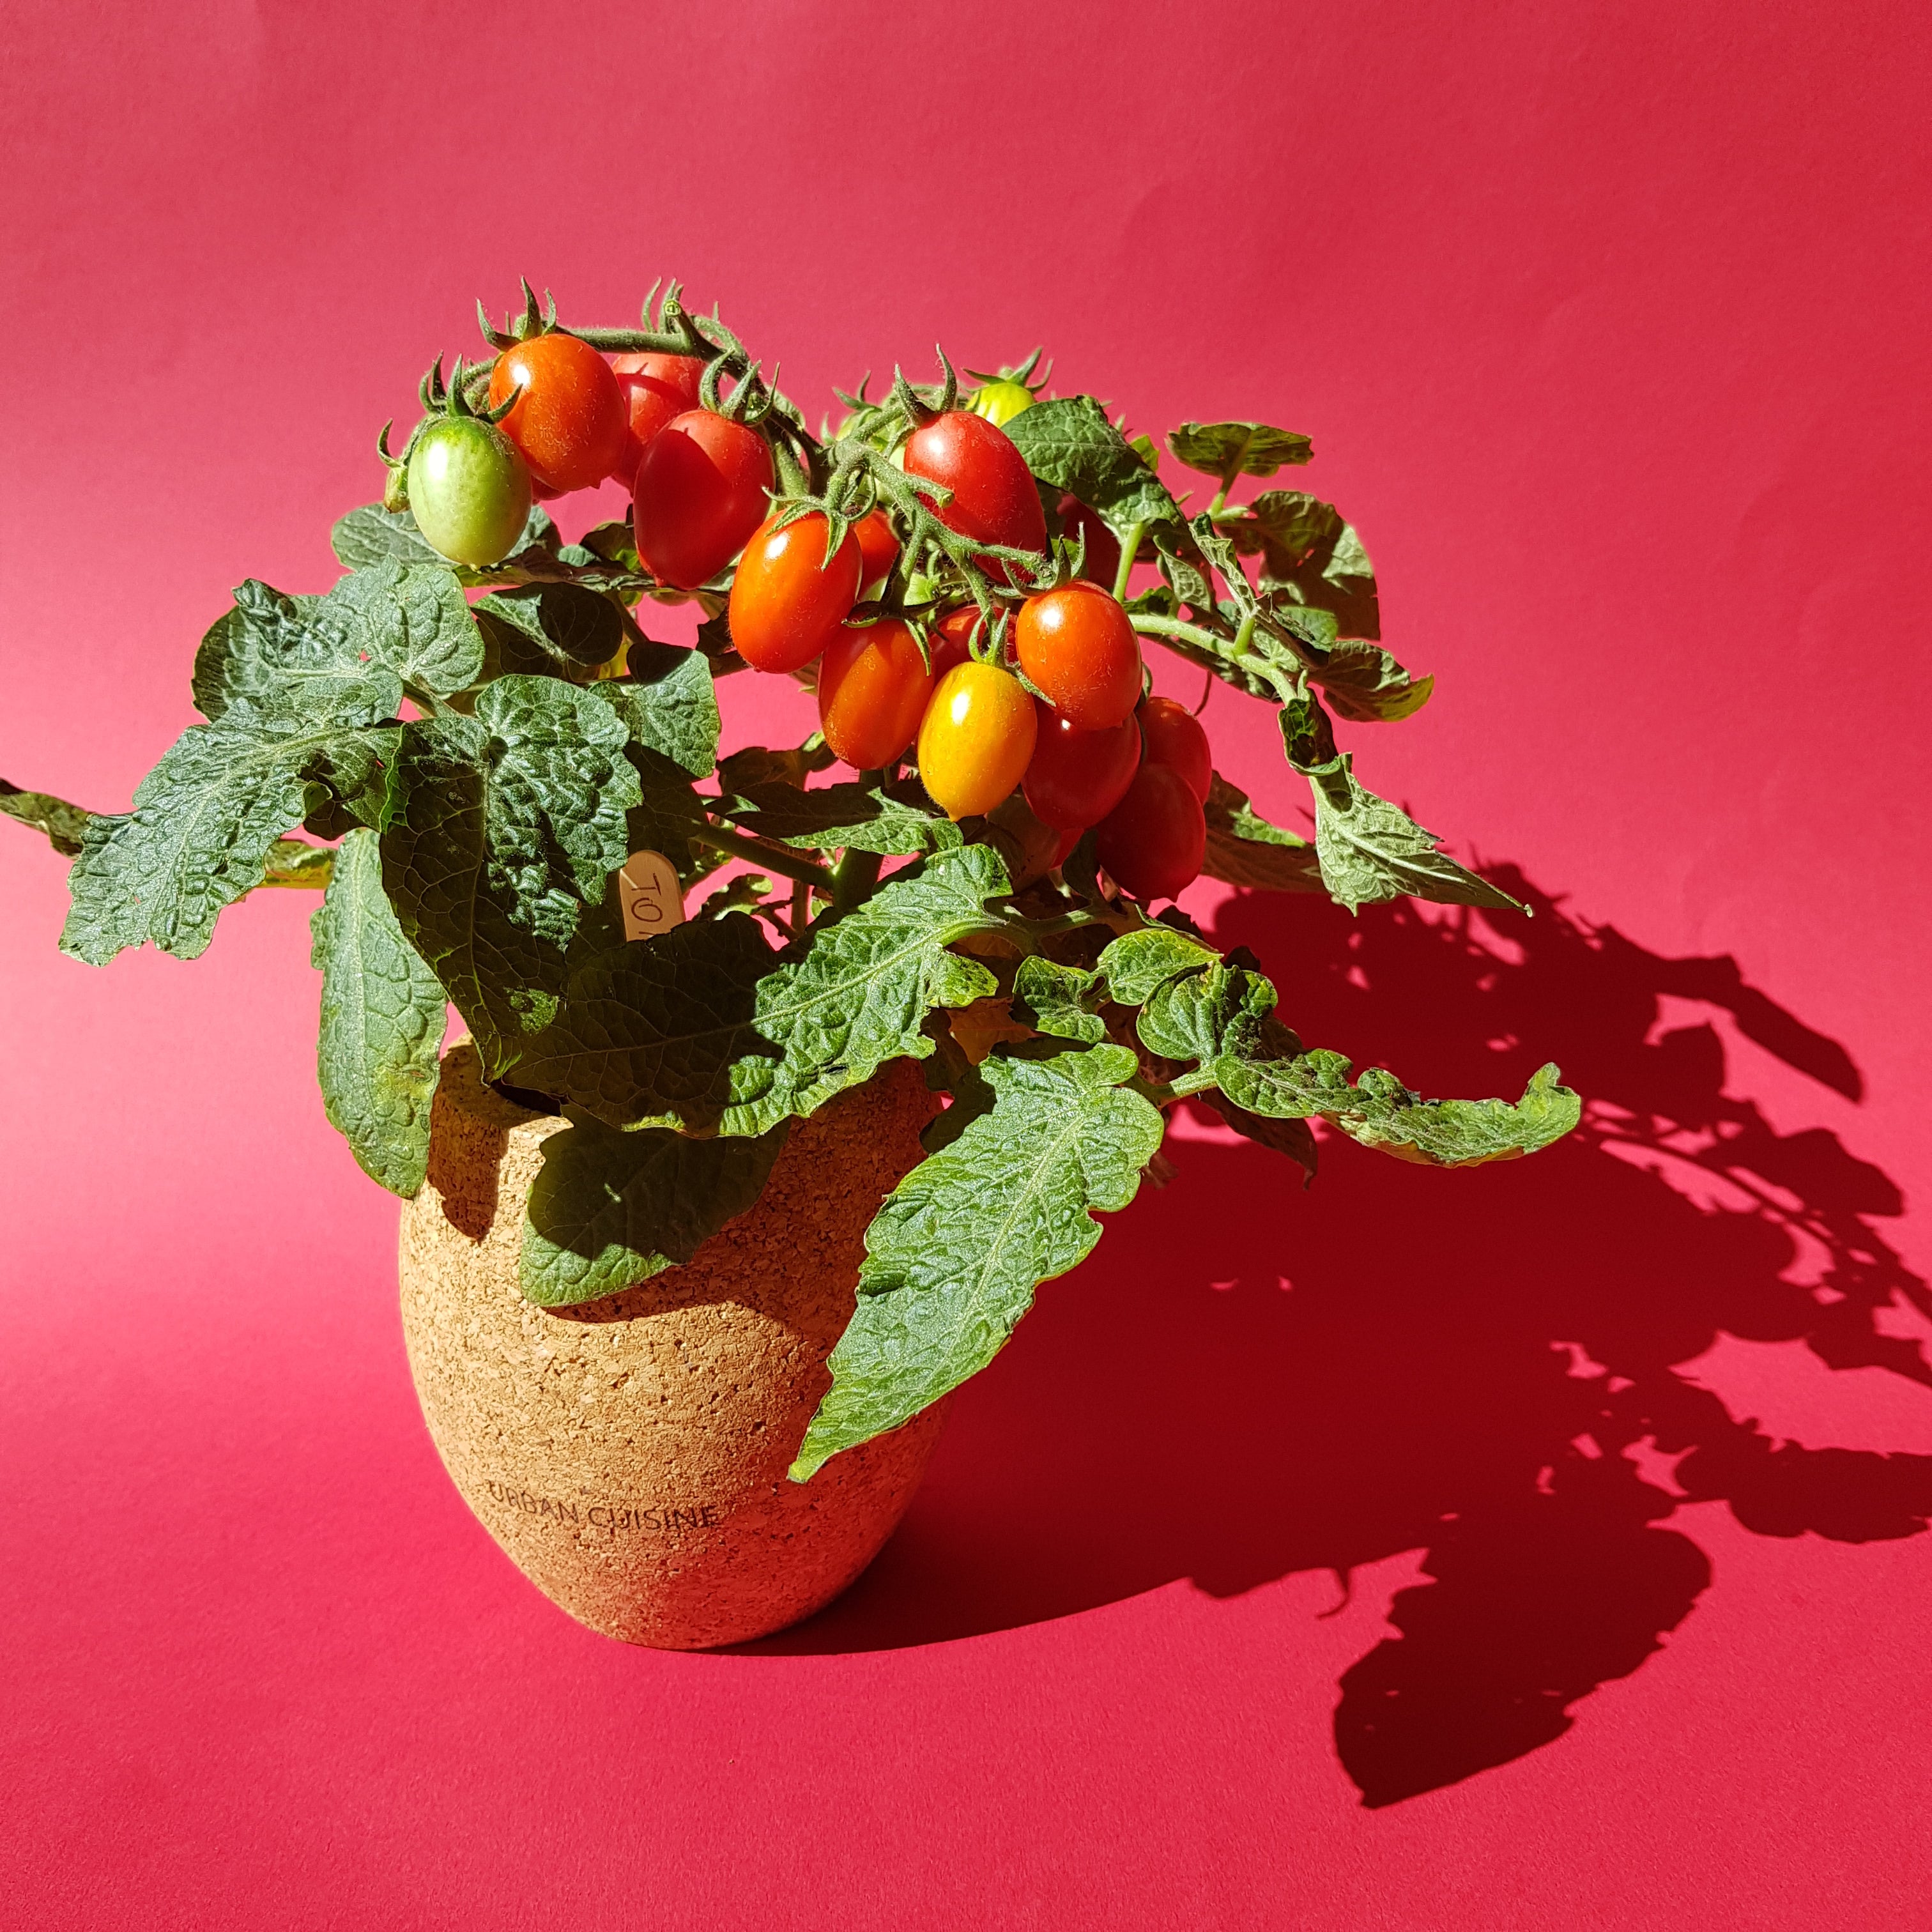 Comment faire un semis de Tomate Cerise réussi ? – URBAN CUISINE